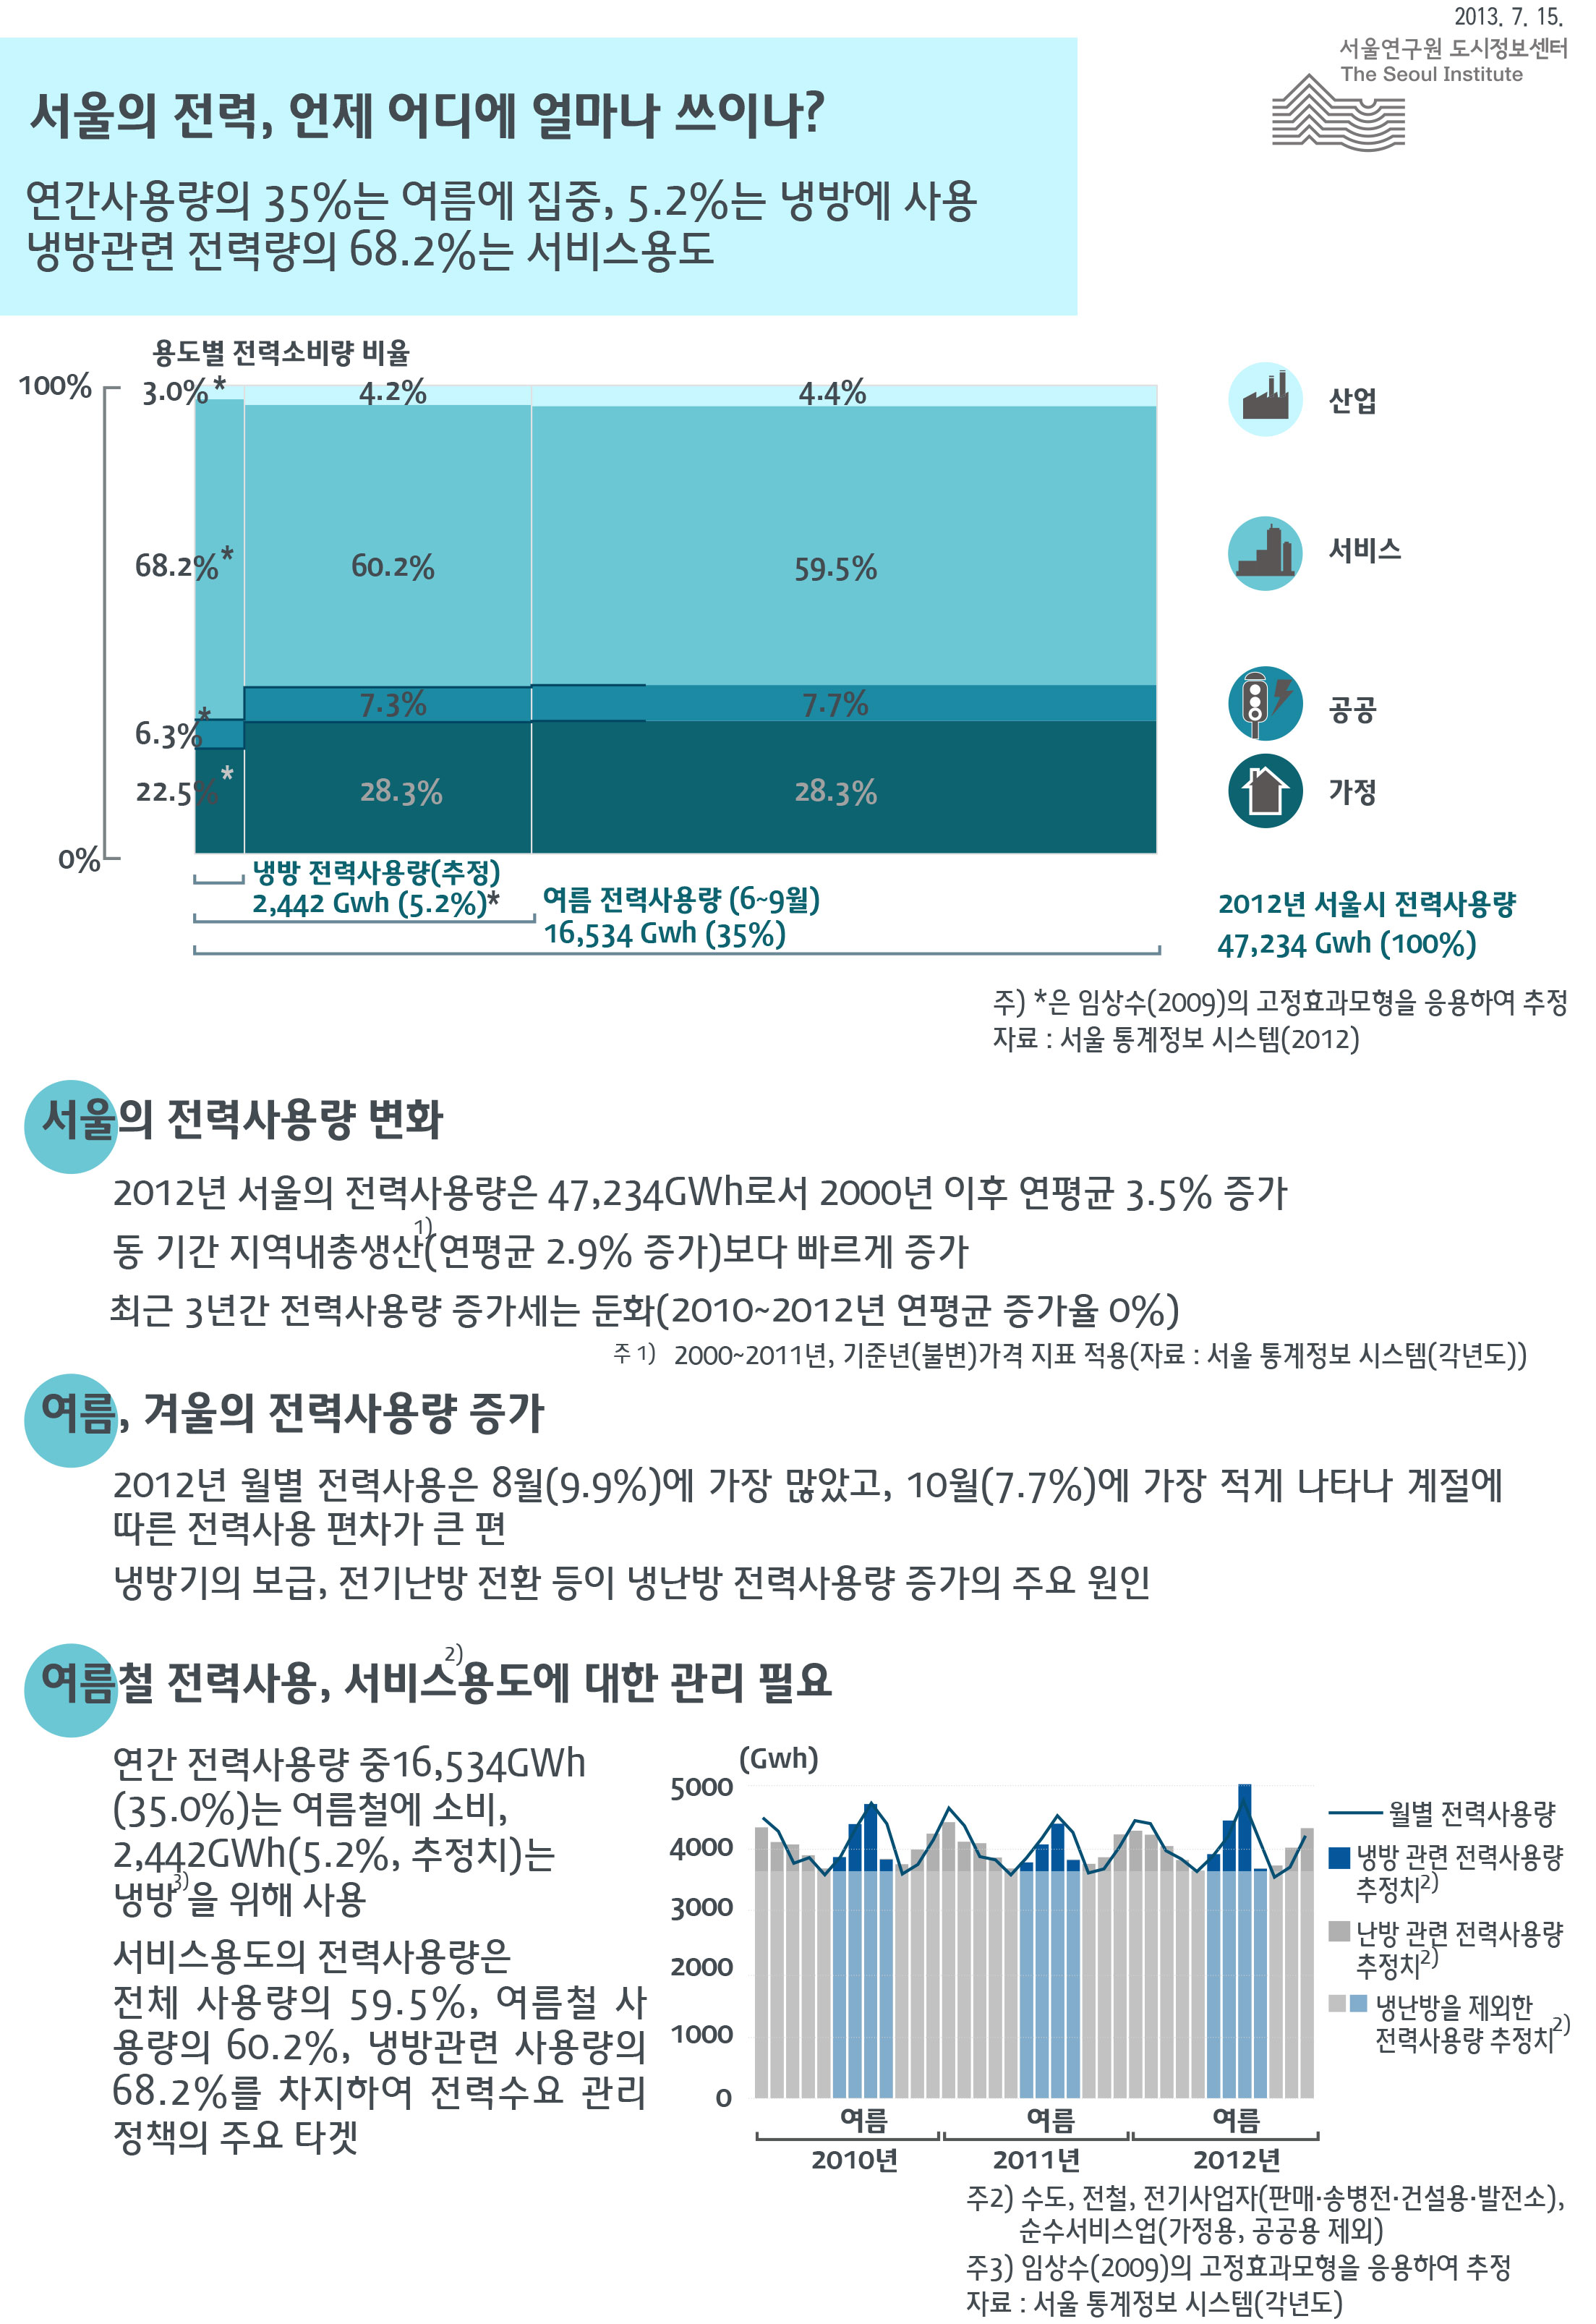 서울의 전력, 언제 어디에 얼마나 쓰이나? 서울인포그래픽스 제42호 2013년 7월 15일 연간사용량의 35%는 여름에 집중, 5.2%는 냉방에 사용. 냉방에 사용하는 전력량의 68.2%가 서비스용도로 정리될 수 있습니다. 인포그래픽으로 제공되는 그래픽은 하단에 표로 자세히 제공됩니다.